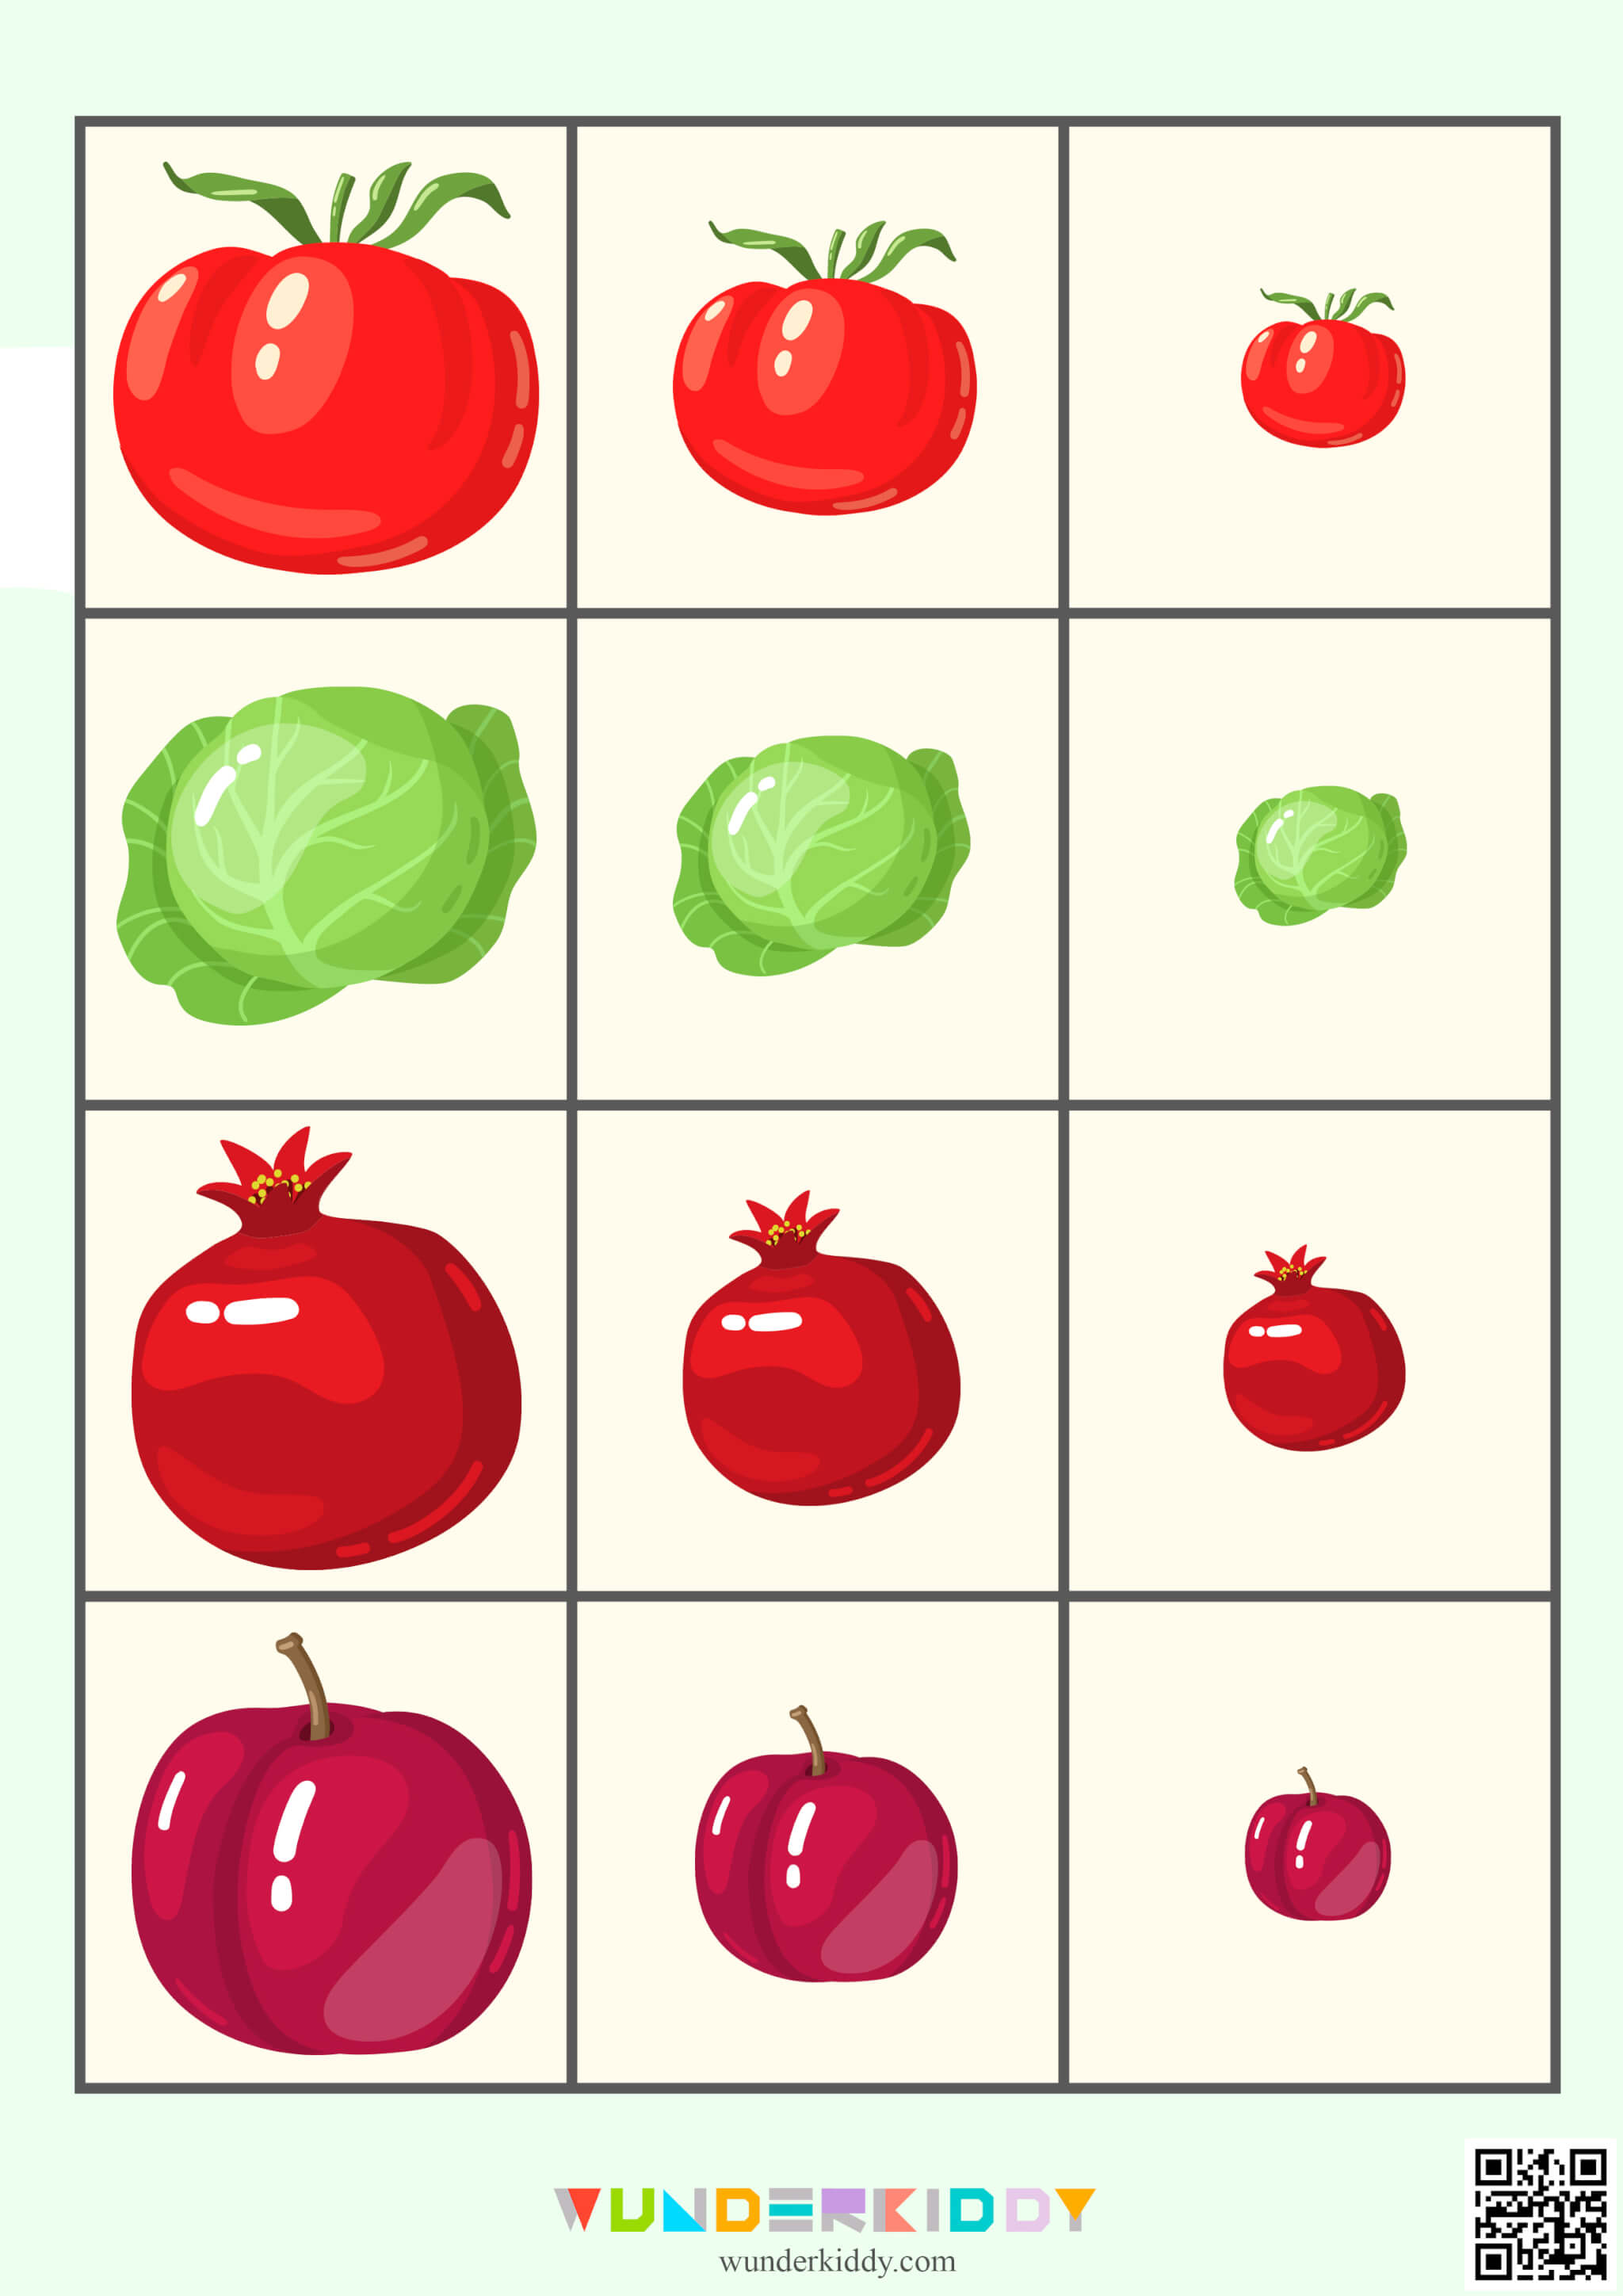 Worksheet «Fruits and Vegetables» - Image 3